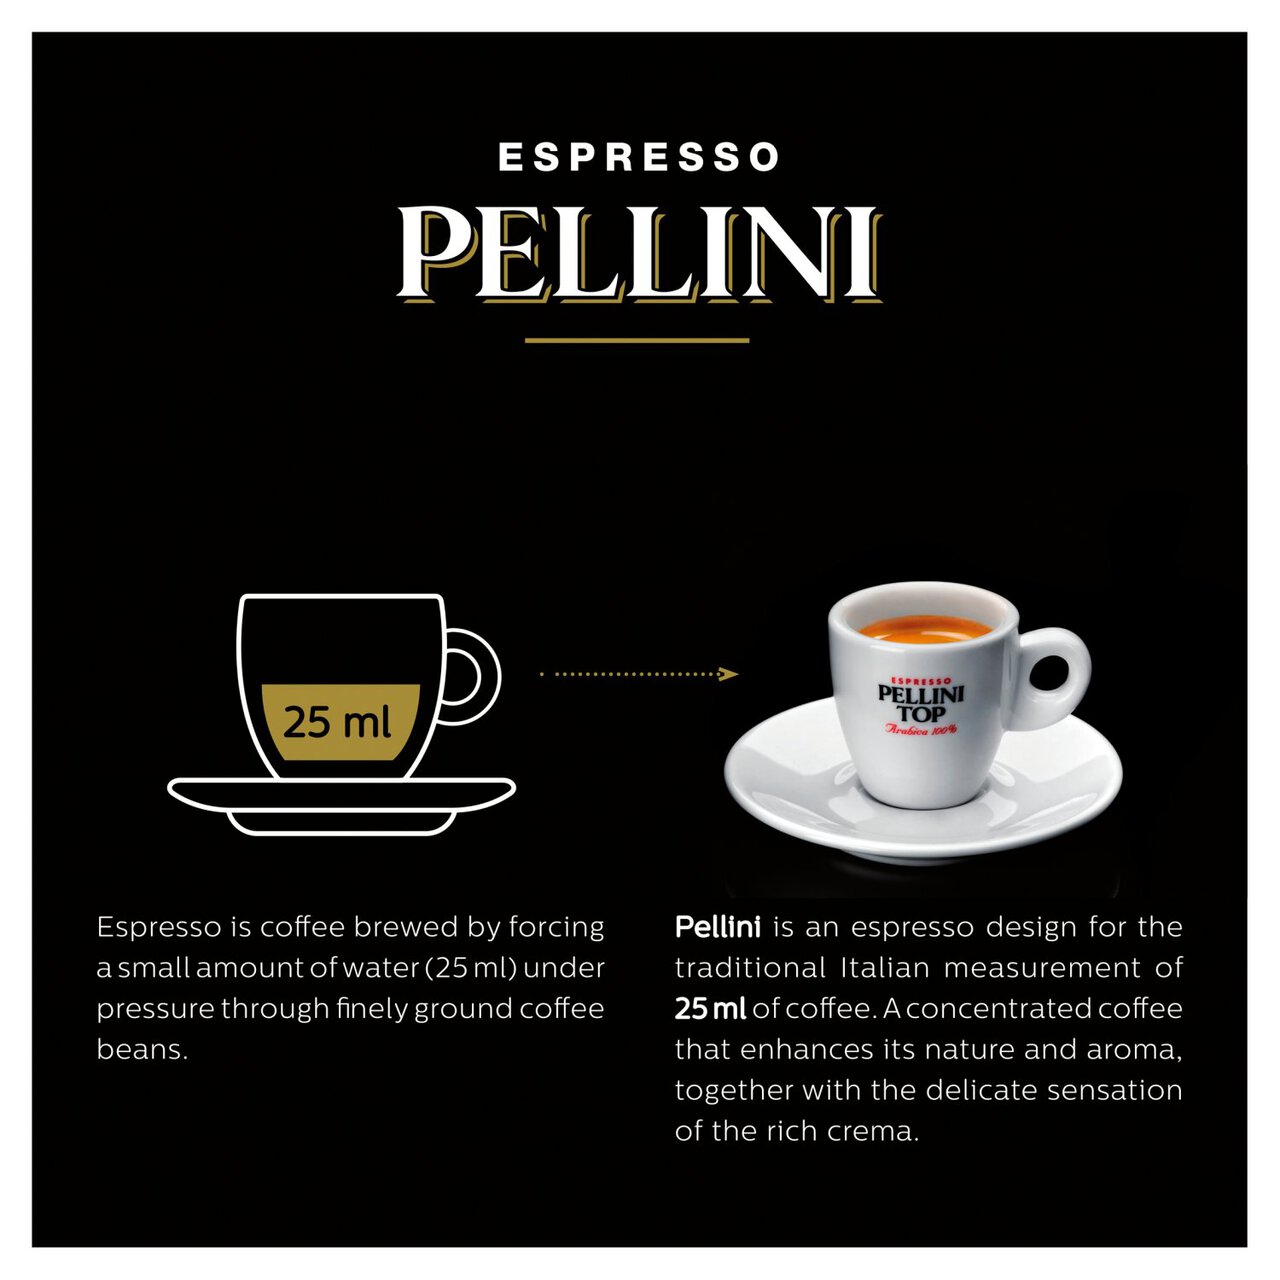 Pellini Top Arabica 100% Compostable Nespresso Compatible Coffee Capsules 30 per pack